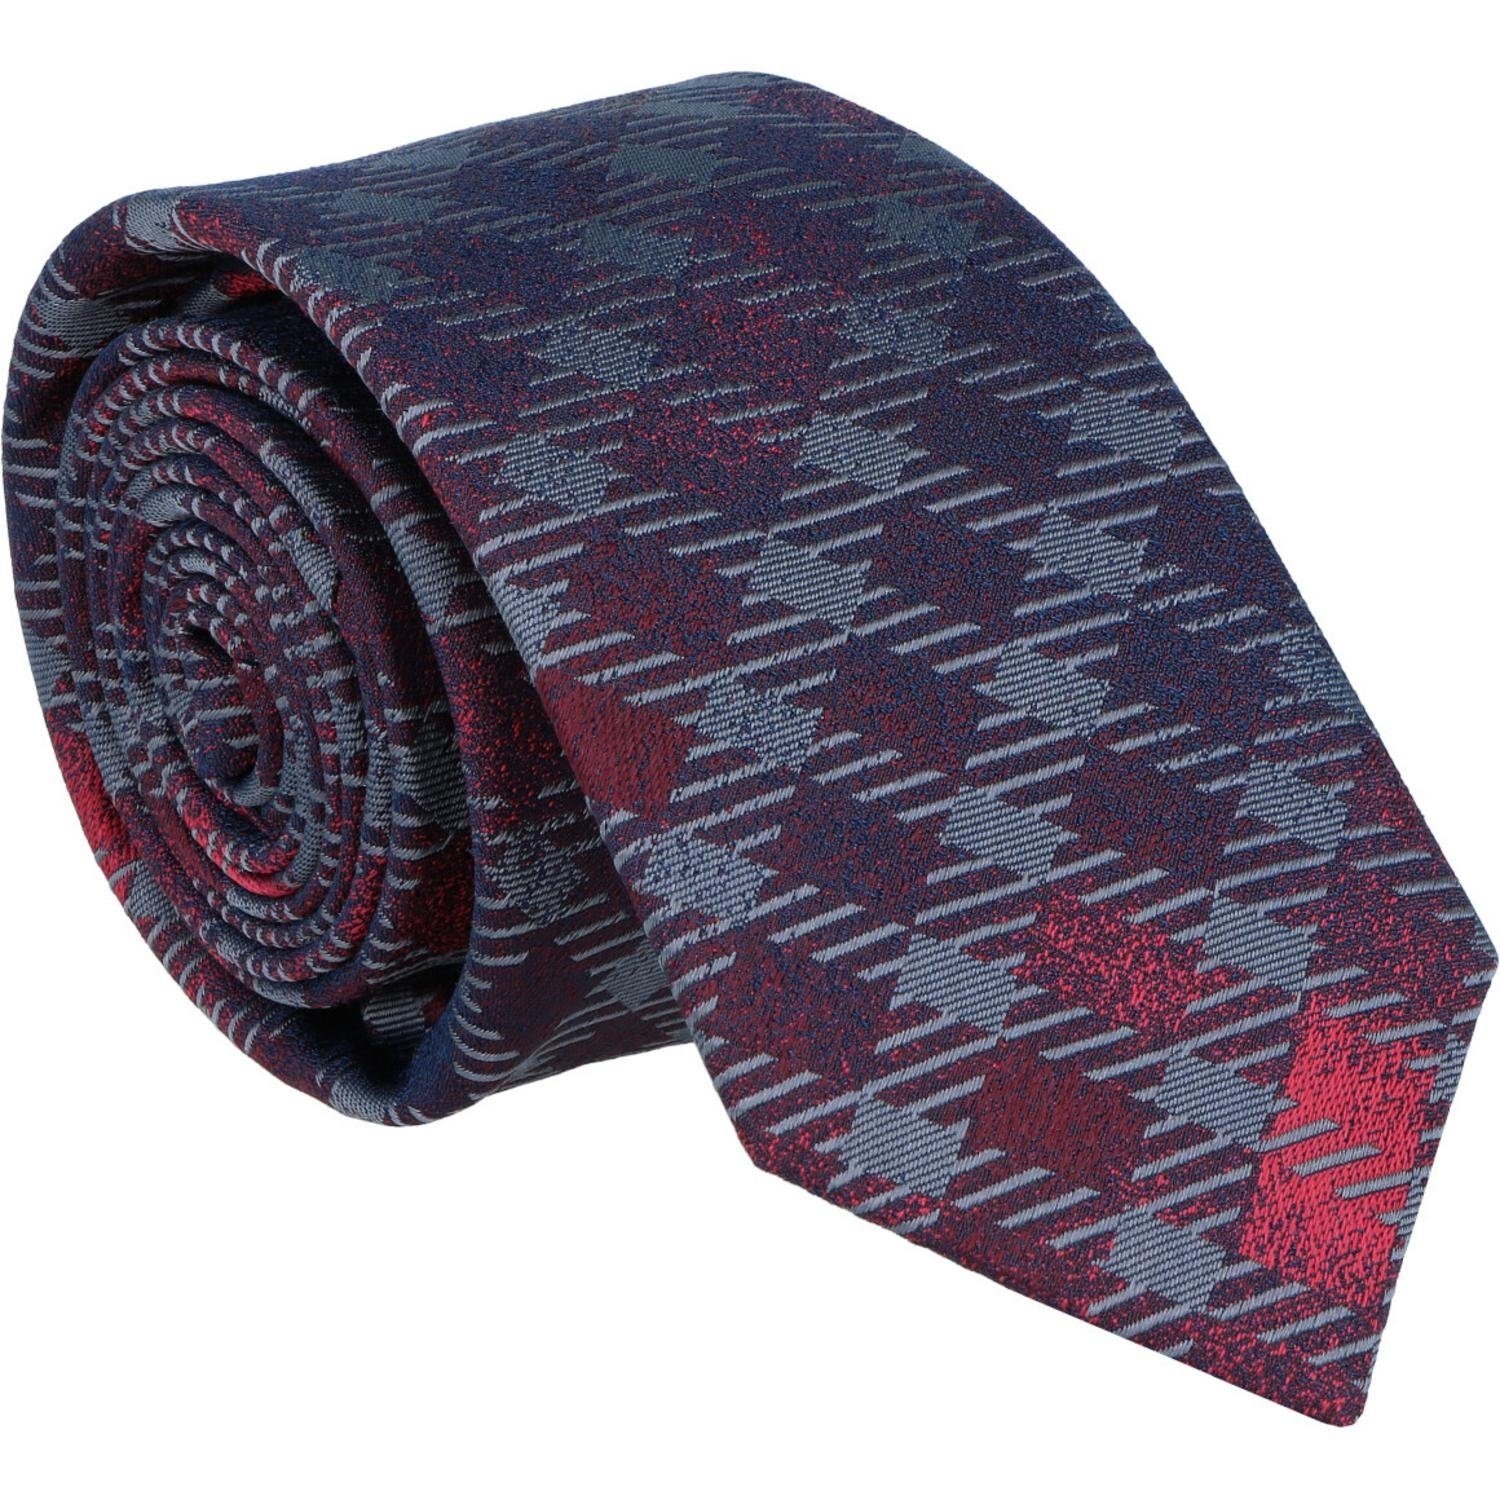 WILLEN Krawatte Krawatte 100% Seide 6,5cm